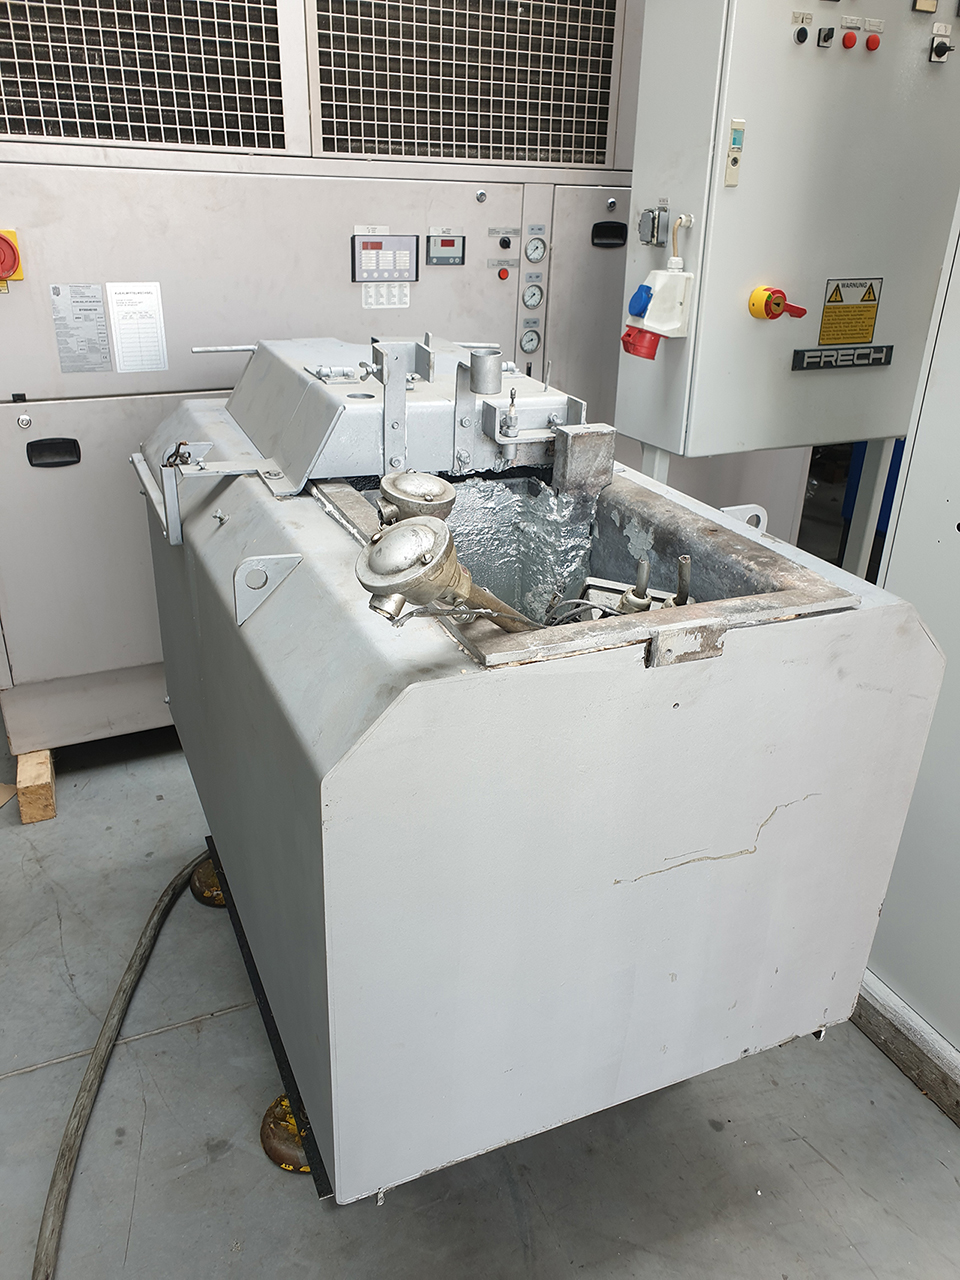 Ricondizionamento della macchina di pressofusione a camera calda Frech DAW 80